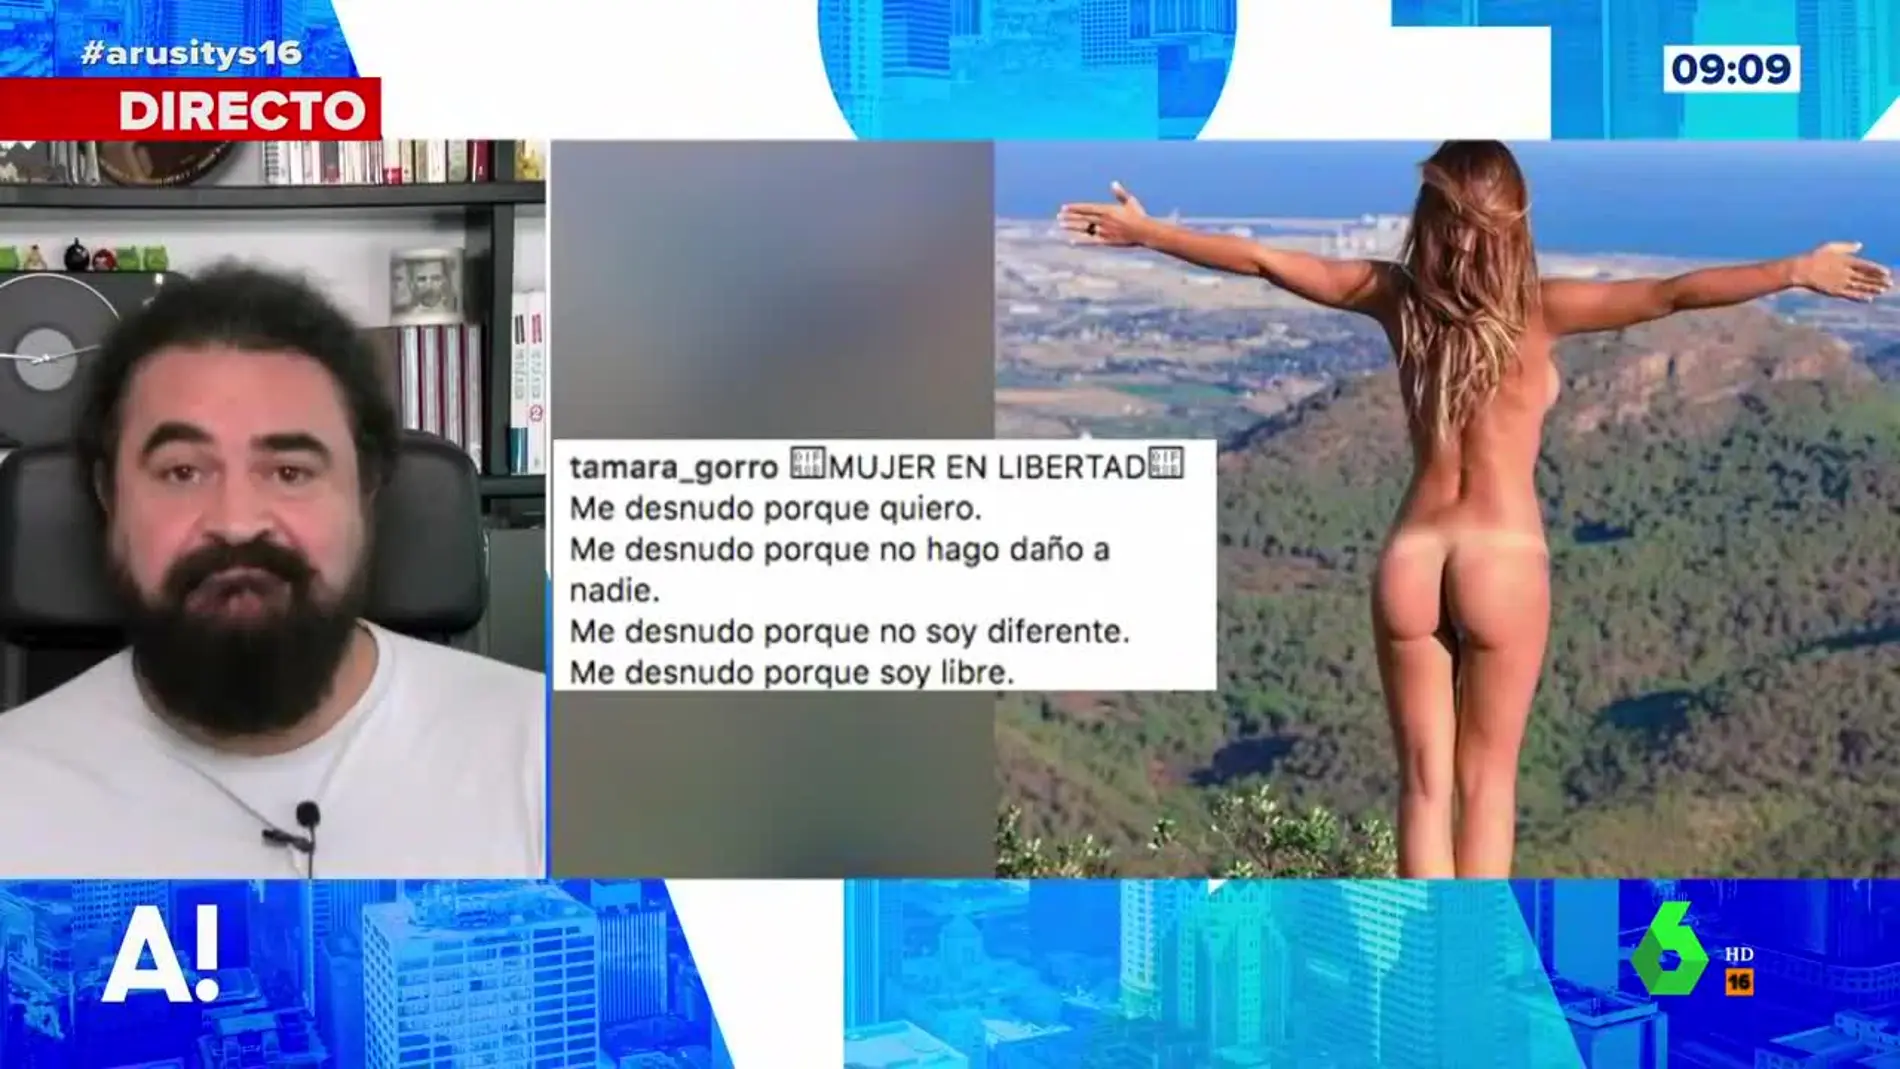 Esta es la relación que encuentra El Sevilla entre el desnudo reivindicativo de Tamara Gorro y el cambio climático